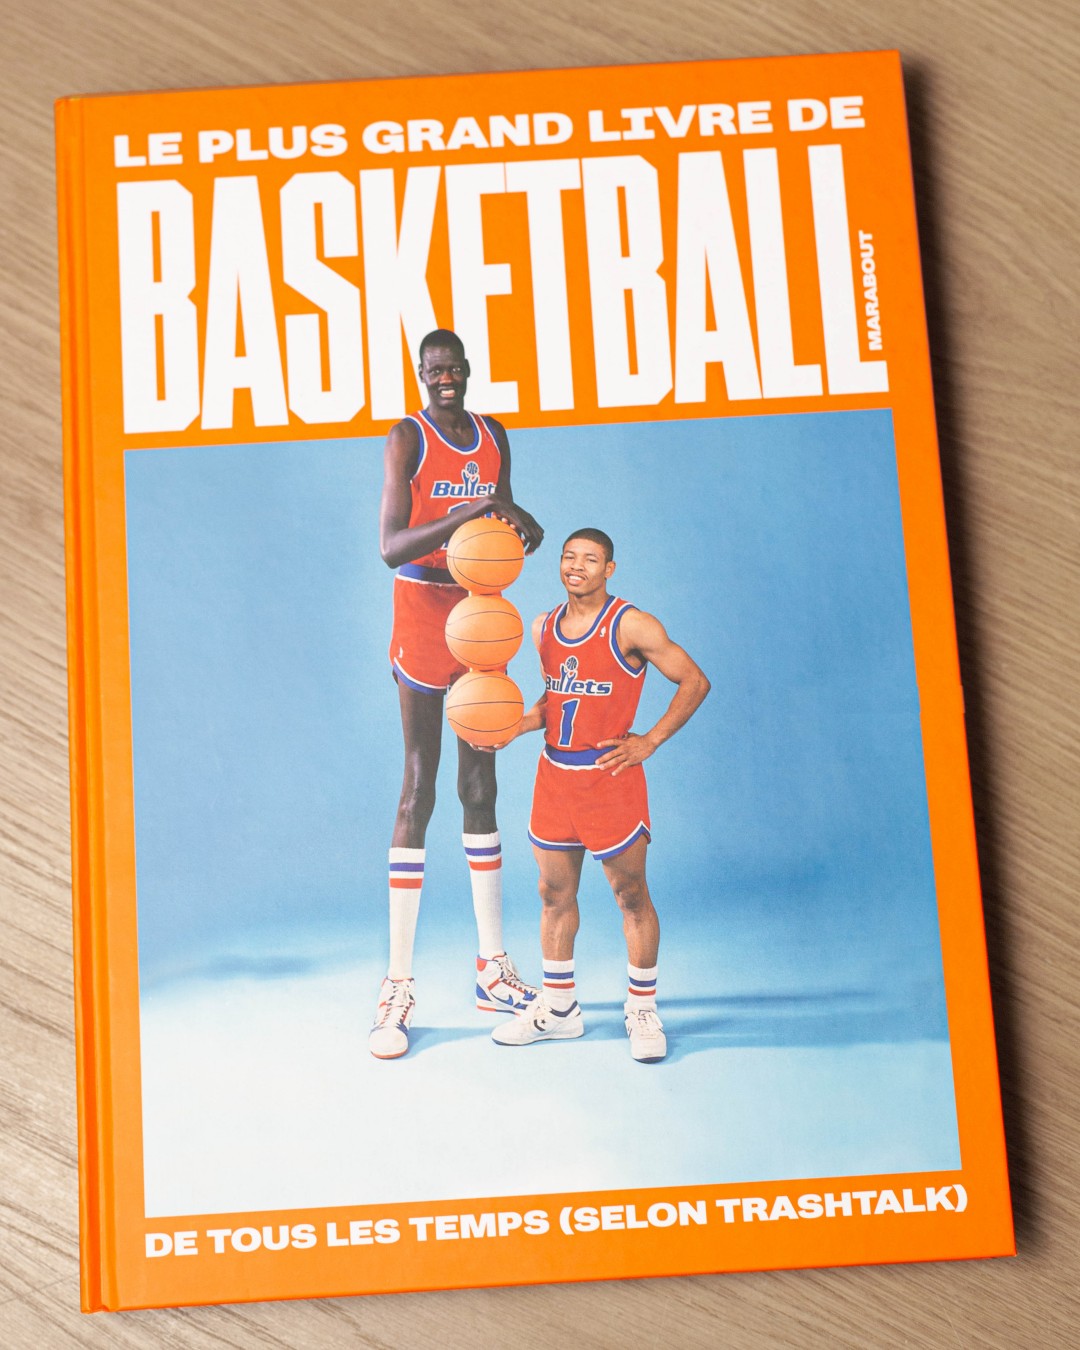 Le plus grand livre de basket-ball de tous les temps (selon TrashTalk)